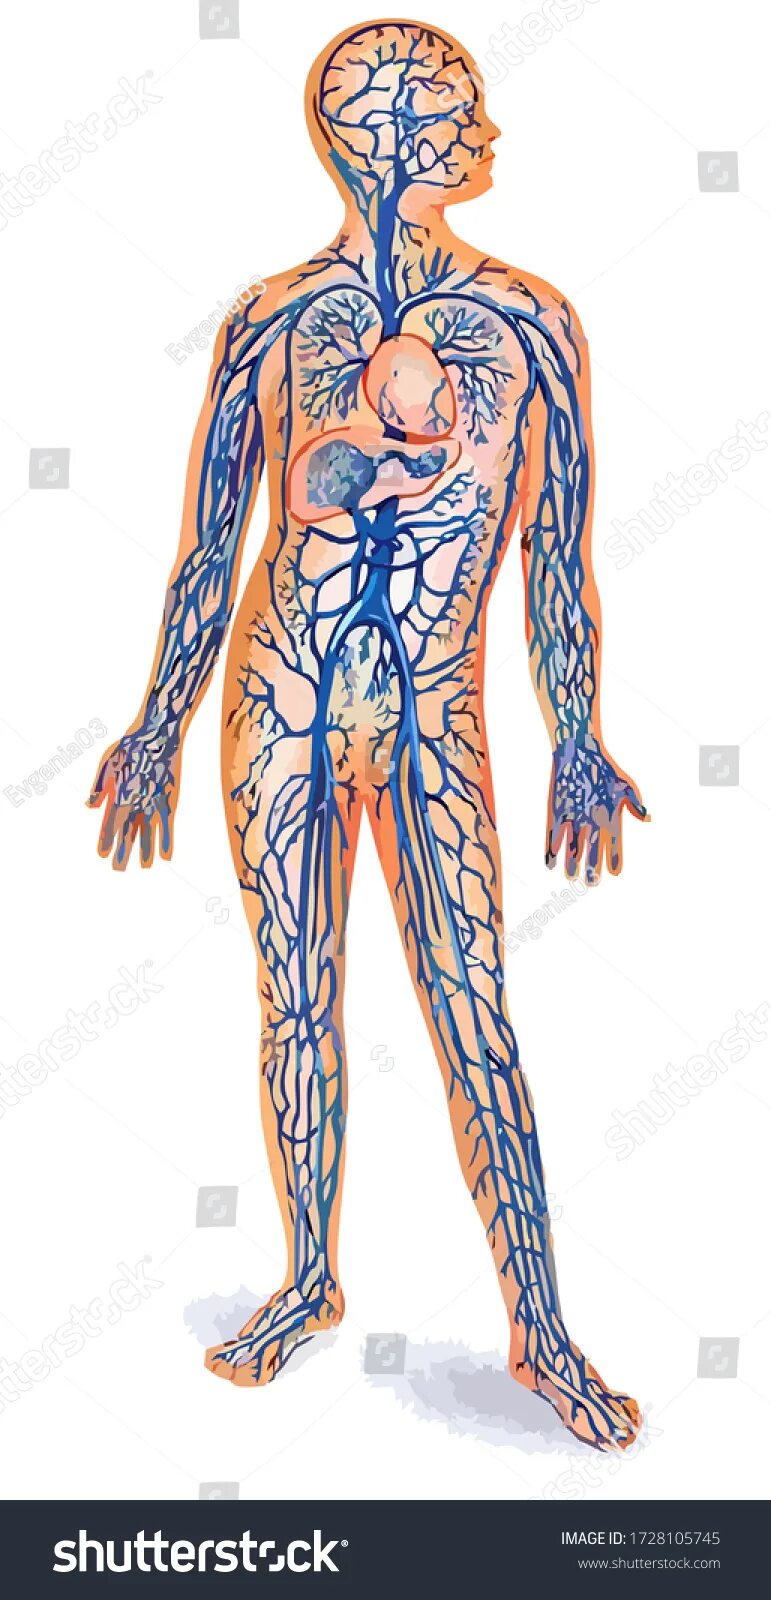 Название самой большой вены у человека. Венозная система человека анатомия. Венозная система человека анатомия схема. Артериальная система кровообращения. Вены большого круга кровообращения анатомия.